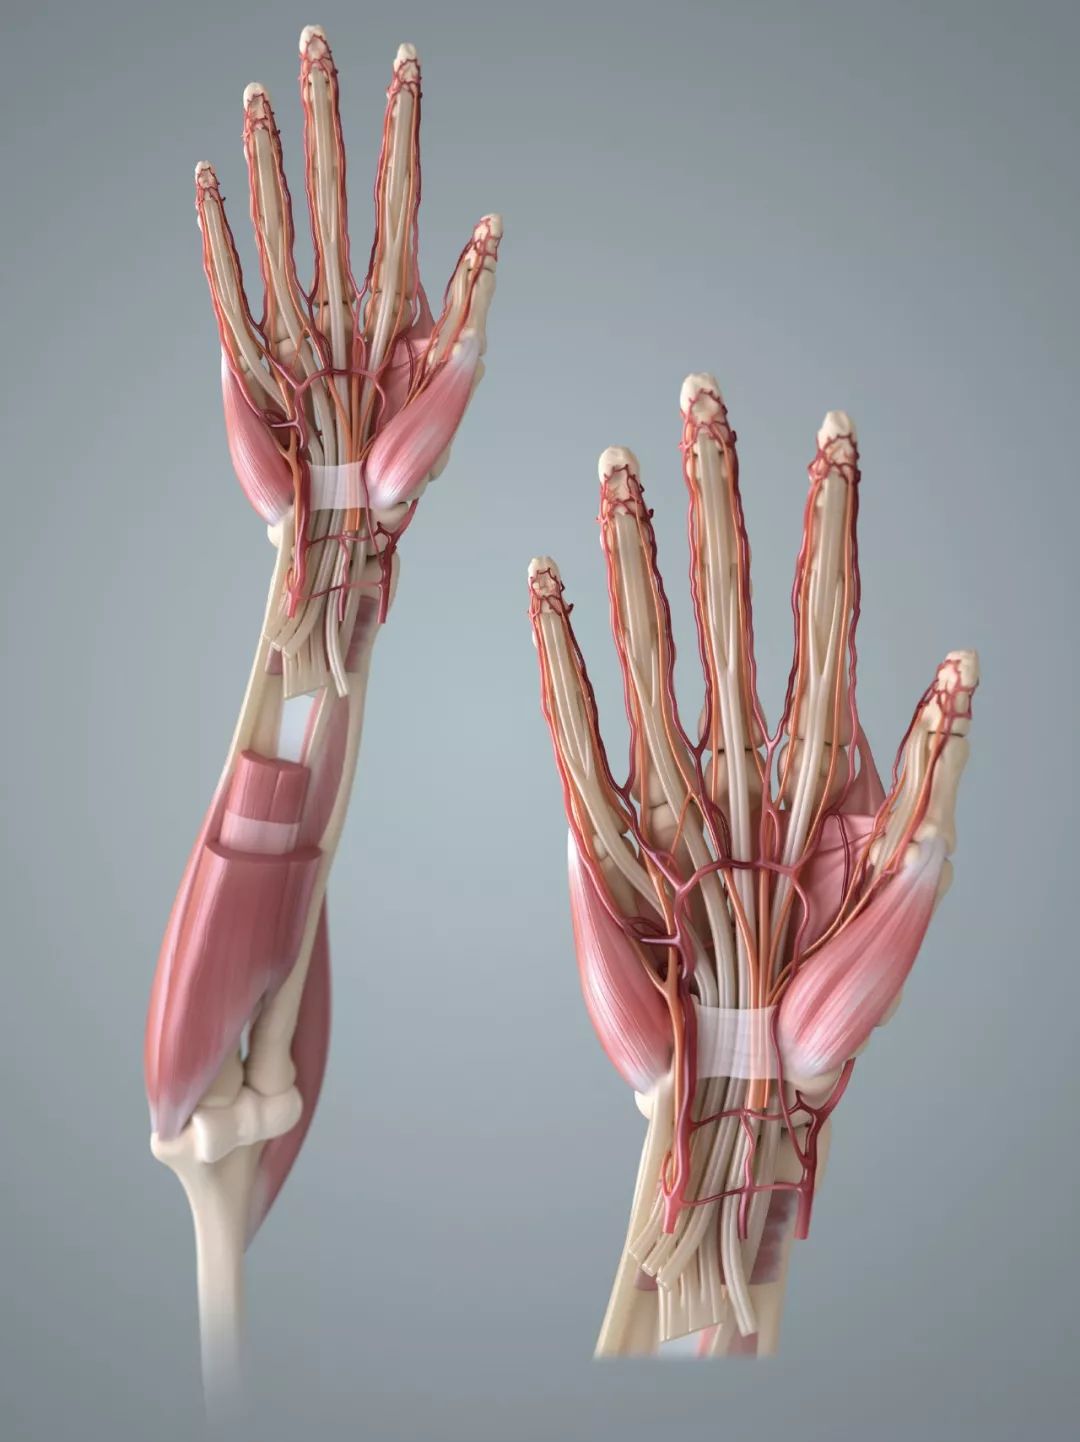 人类灵活的双手由肌腱,关节,肌肉,小骨头,神经和血管等构成,当我们捡